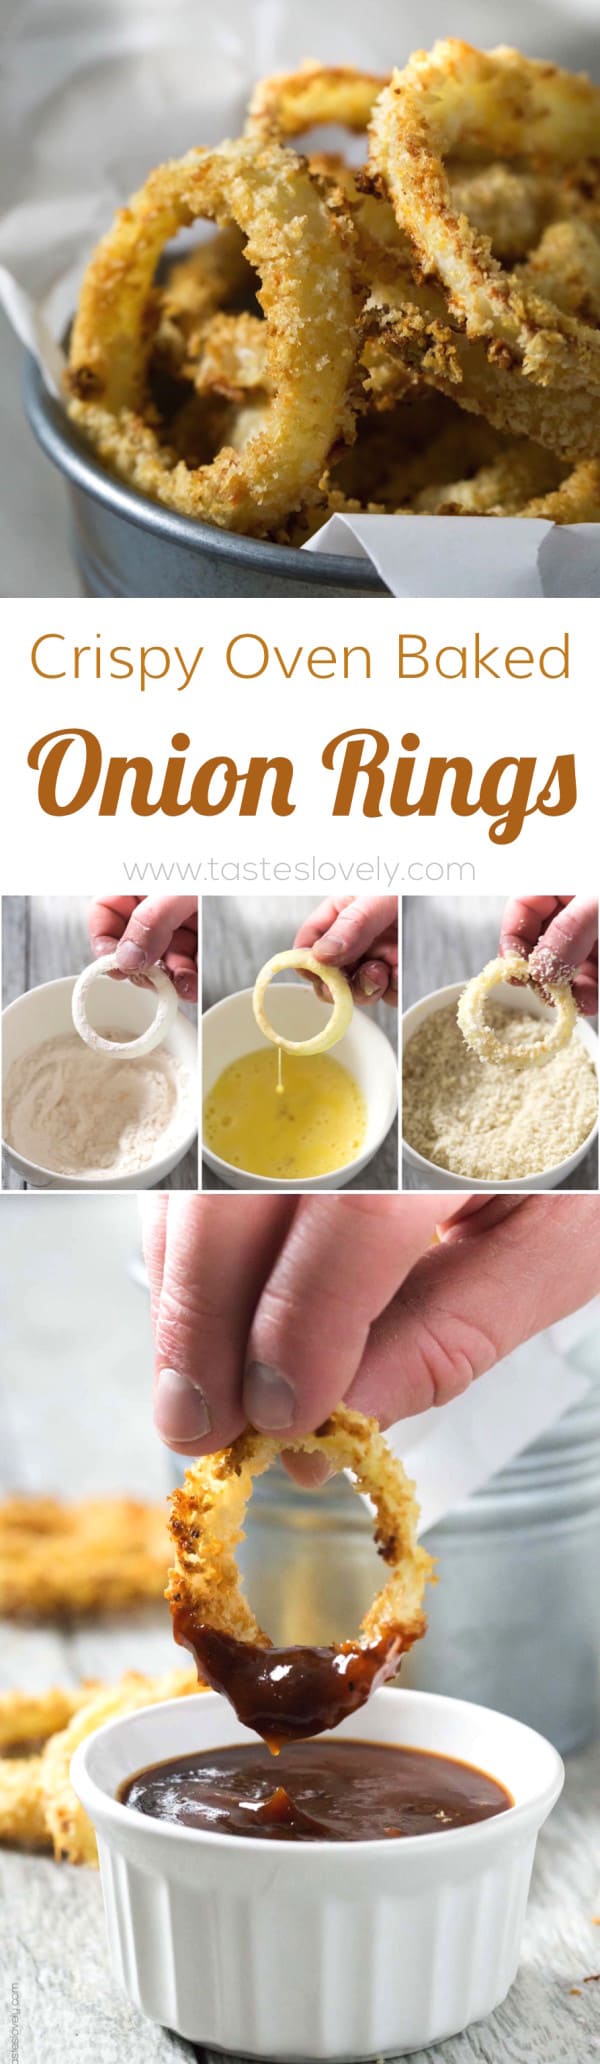 Crispy Oven Baked Onion Rings